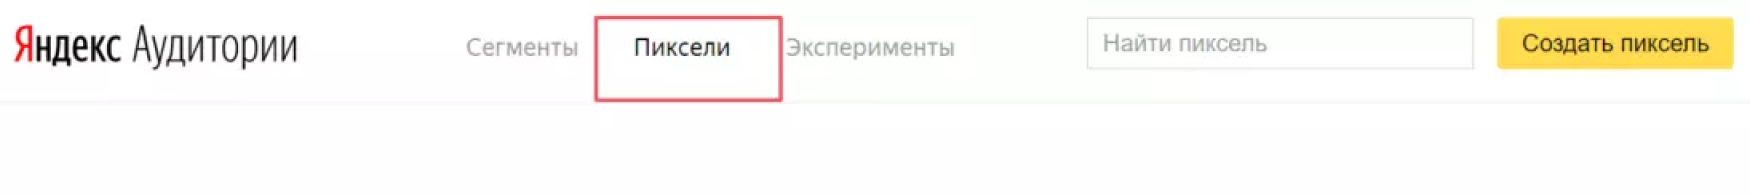 Пиксели Яндекс Аудитории